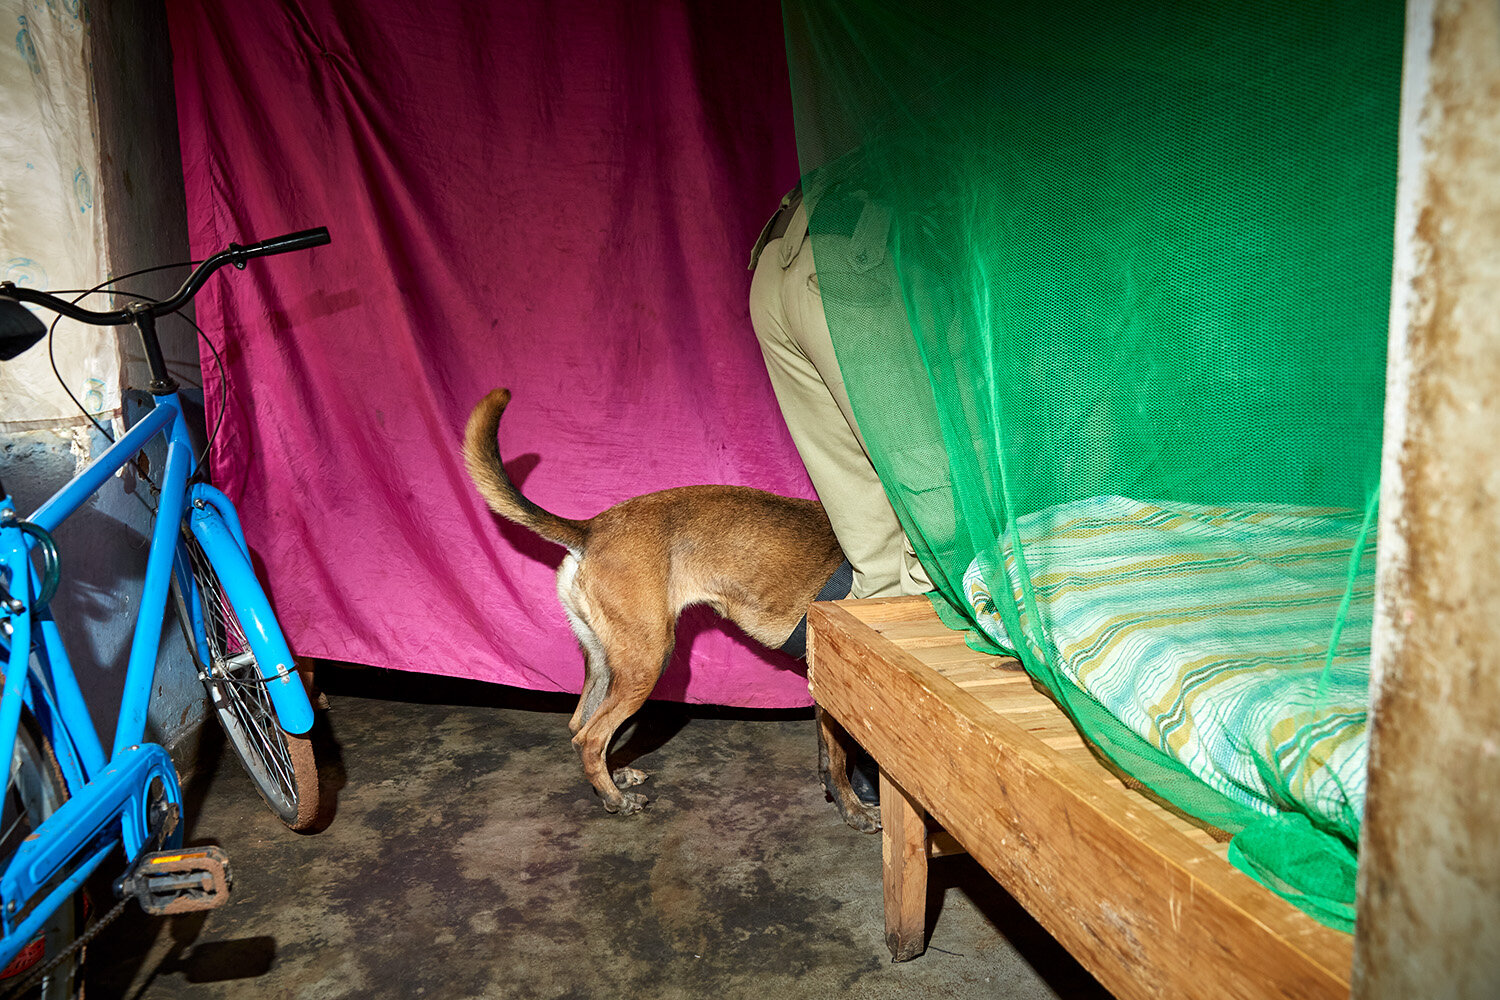  WDDU head Iain and dog Bubba search behind a bed during a mock raid, Lilongwe, Malawi, 2020. 